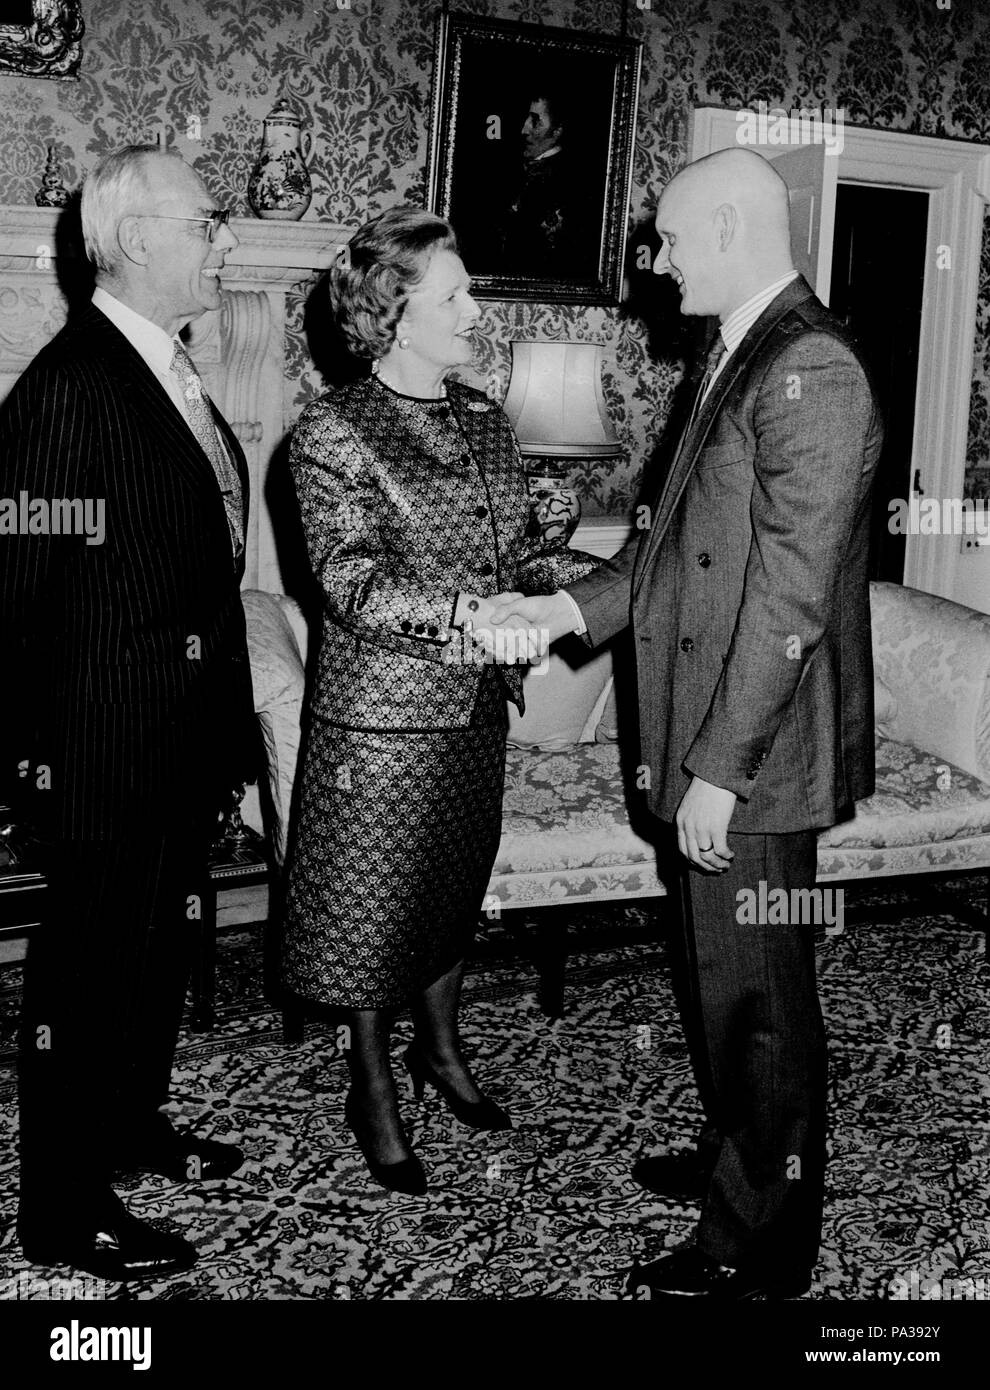 Le premier ministre Margaret Thatcher, regardée par son mari Denis, médaillé d'or olympique accueille Duncan Goodhew au 10 Downing Street, Londres, au cours d'une réception organisée pour les membres de l'équipe des Jeux Olympiques d'hiver britannique et des célébrités du show business. Banque D'Images